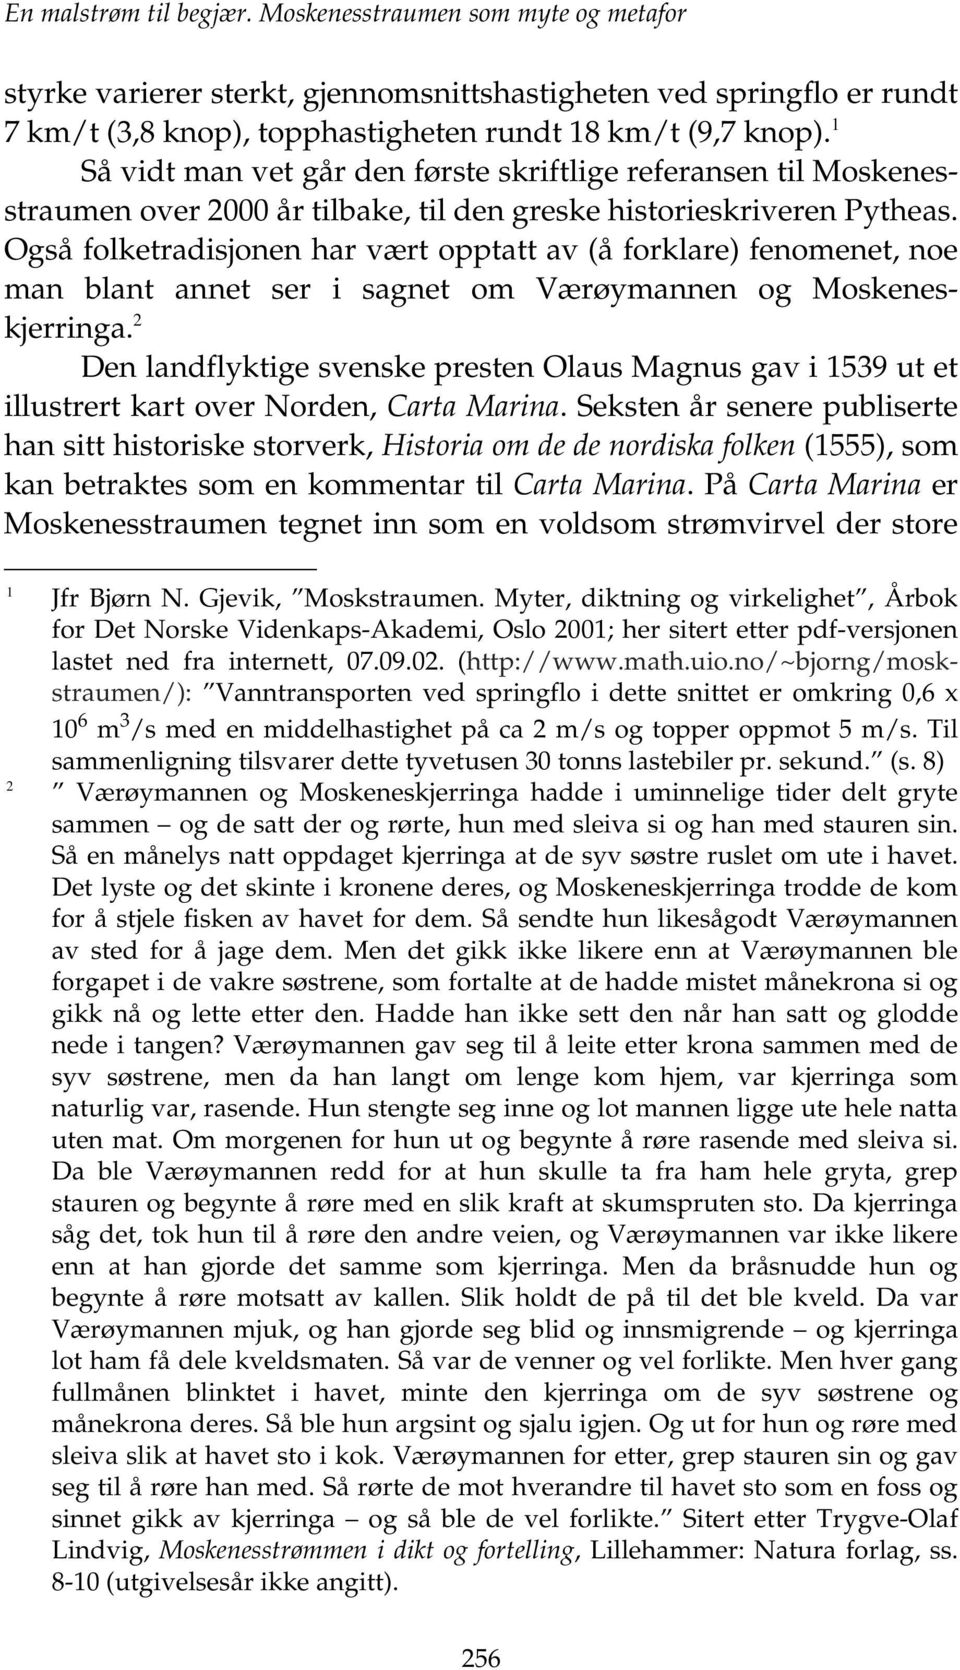 Også folketradisjonen har vært opptatt av (å forklare) fenomenet, noe man blant annet ser i sagnet om Værøymannen og Moskeneskjerringa.